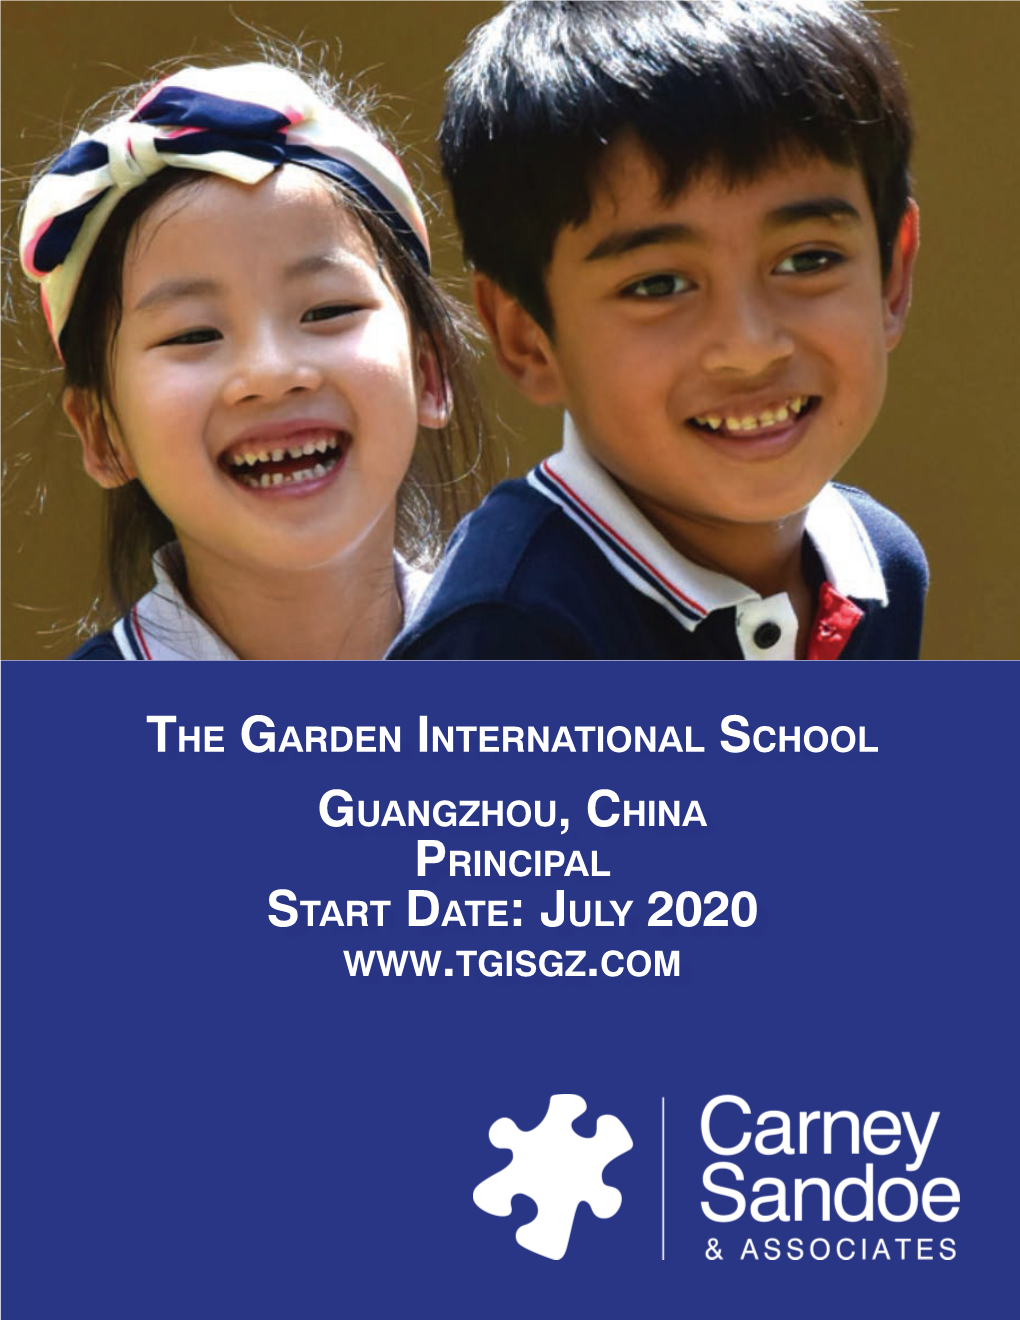 The Garden International School Guangzhou, China